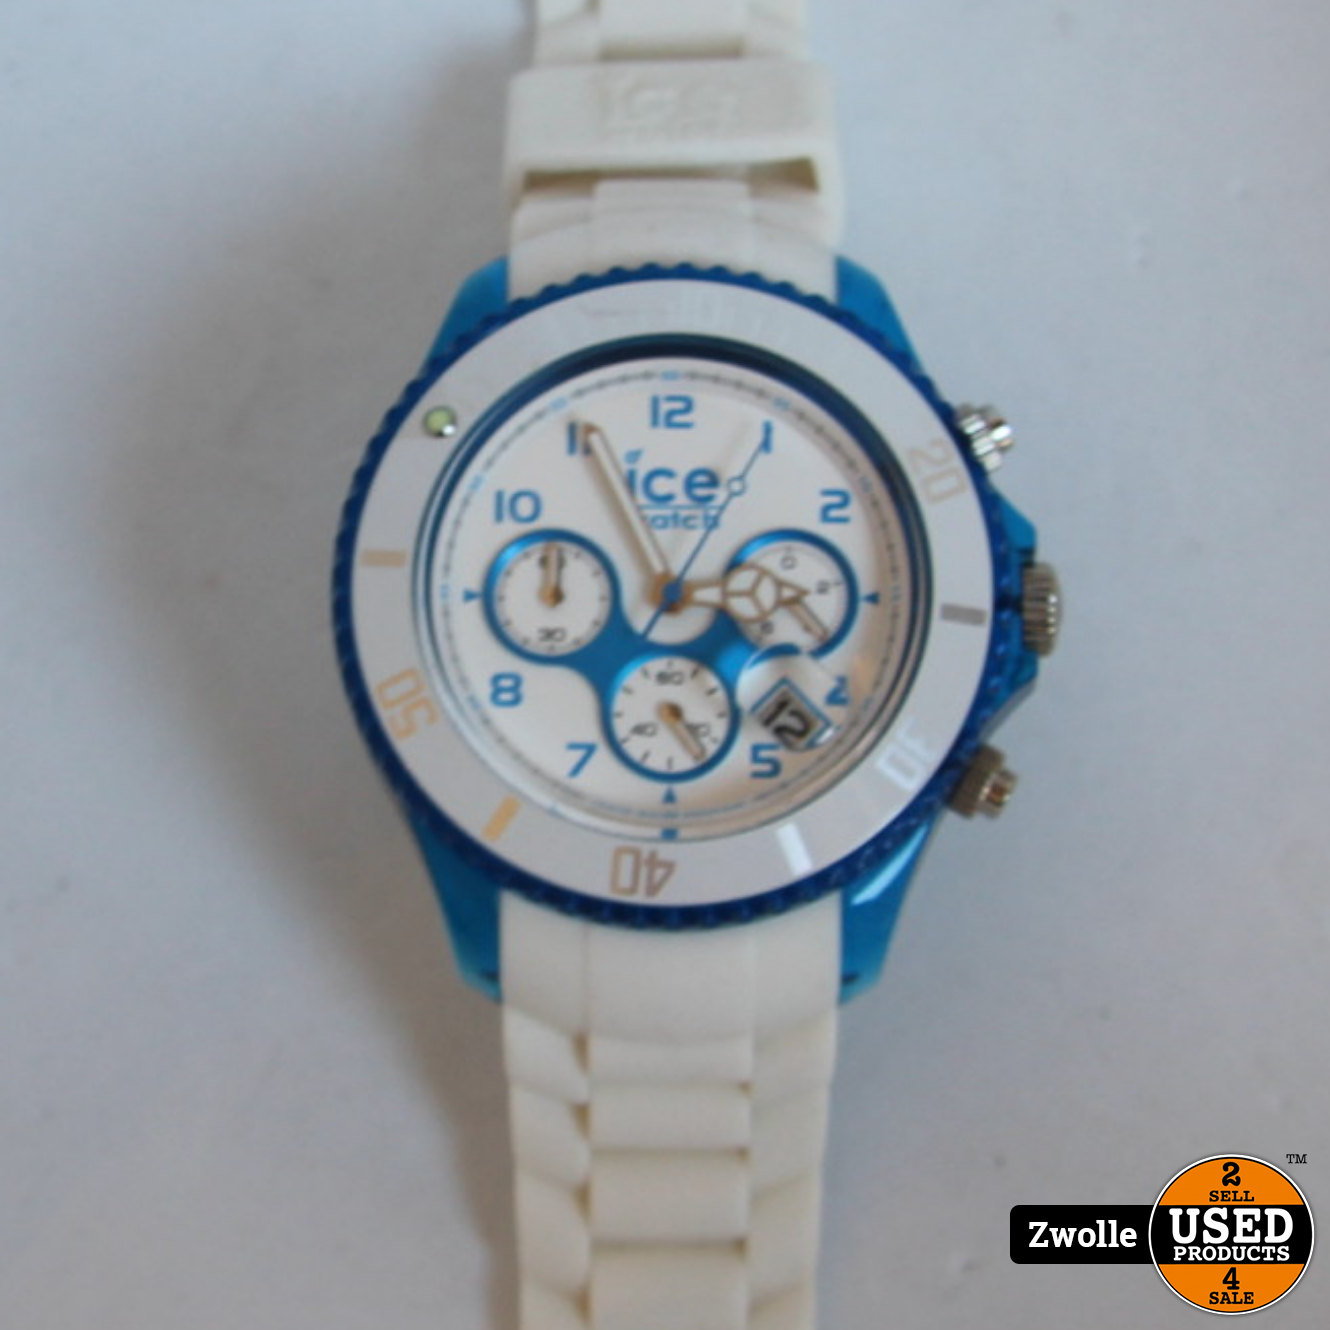 wees gegroet Betreffende Aanhankelijk ICE watch | wit met blauw - Used Products Zwolle